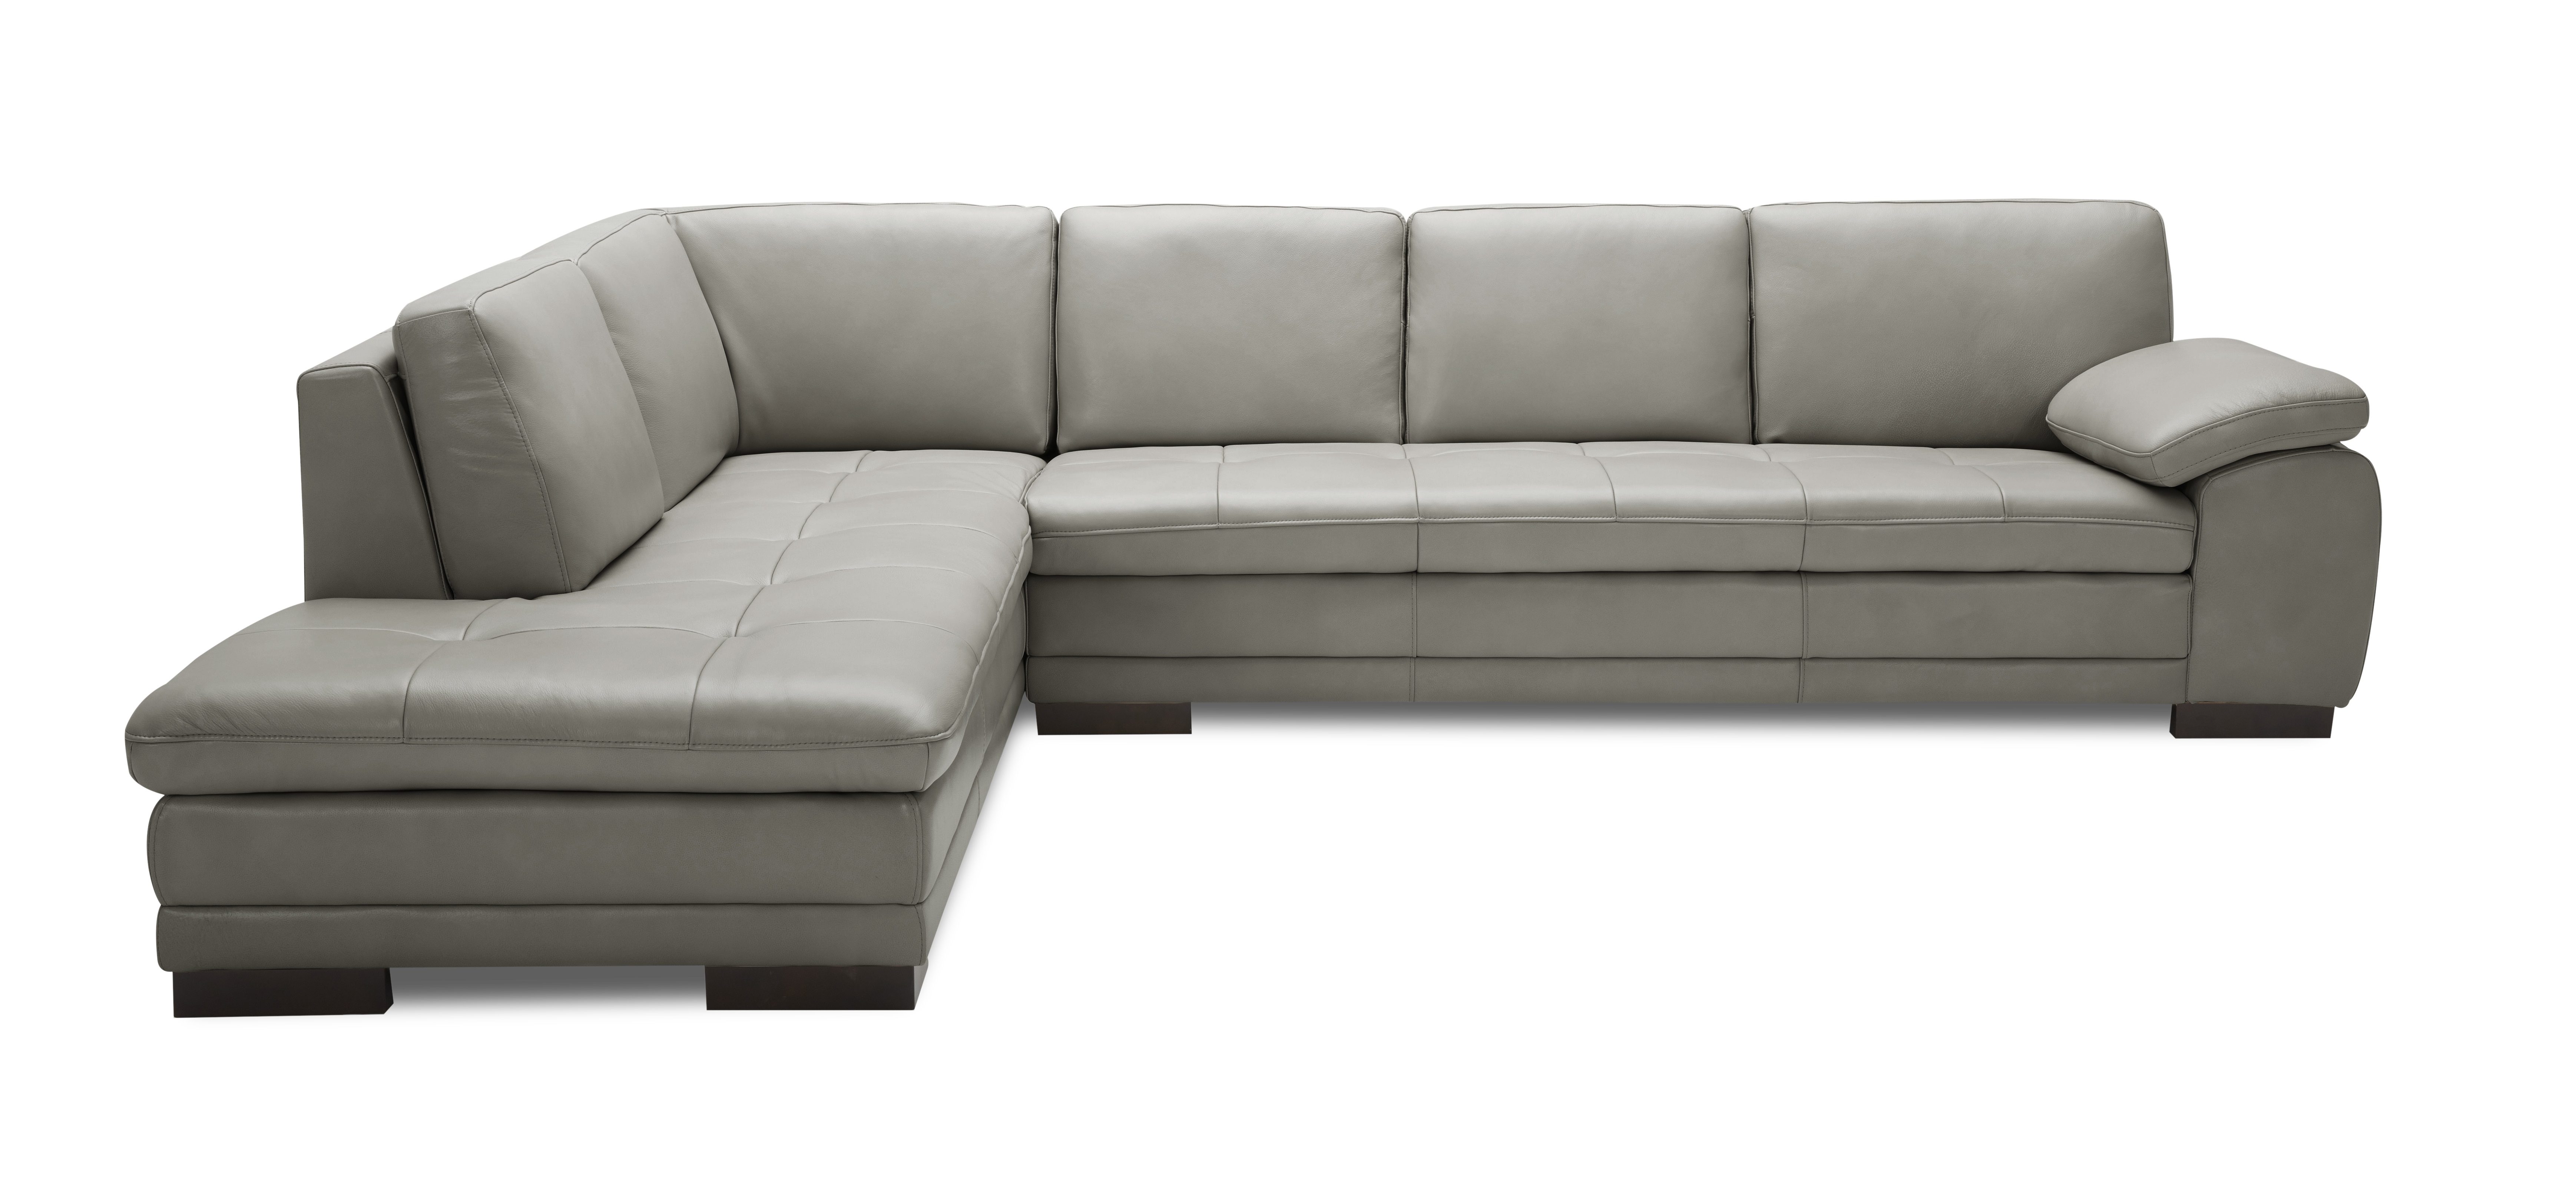 premium italian leather sofa